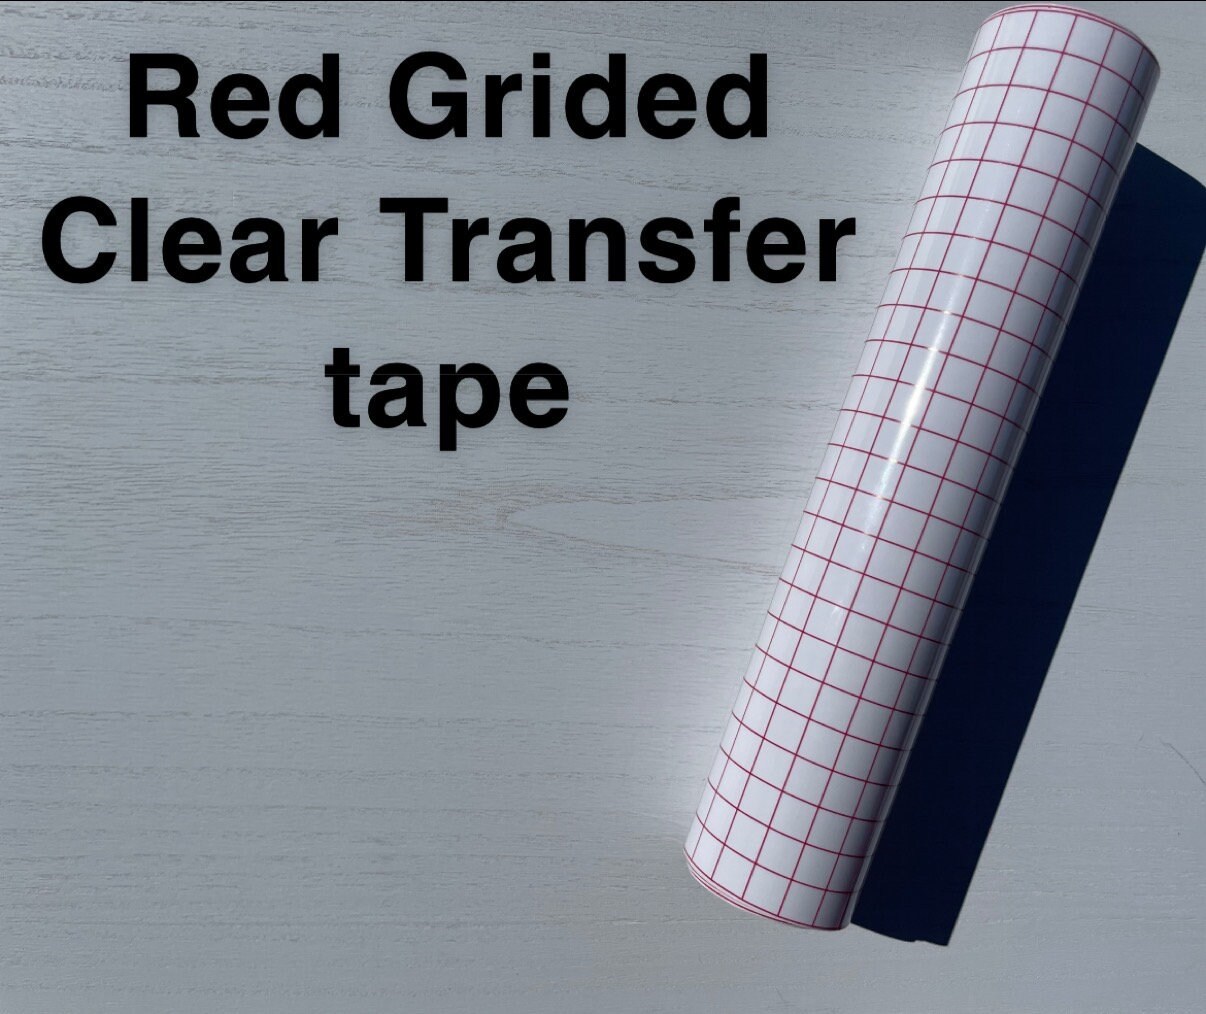 Siser TTD Easy Mask Sheets Heat Transfer Tape Textile 